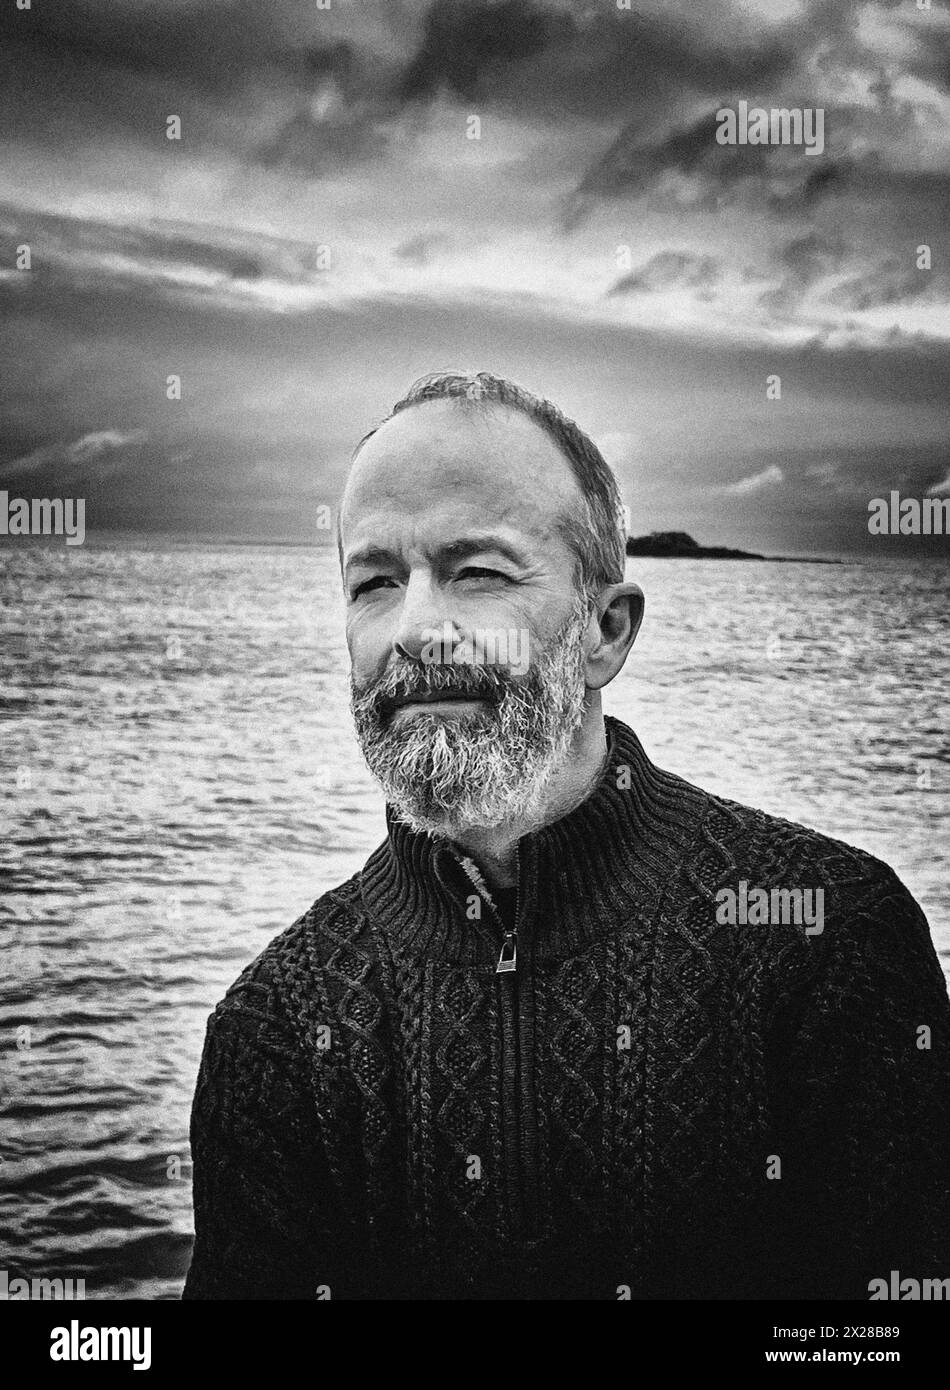 Uomo contemplativo di mezza età con barba sulla barca a vela Foto Stock